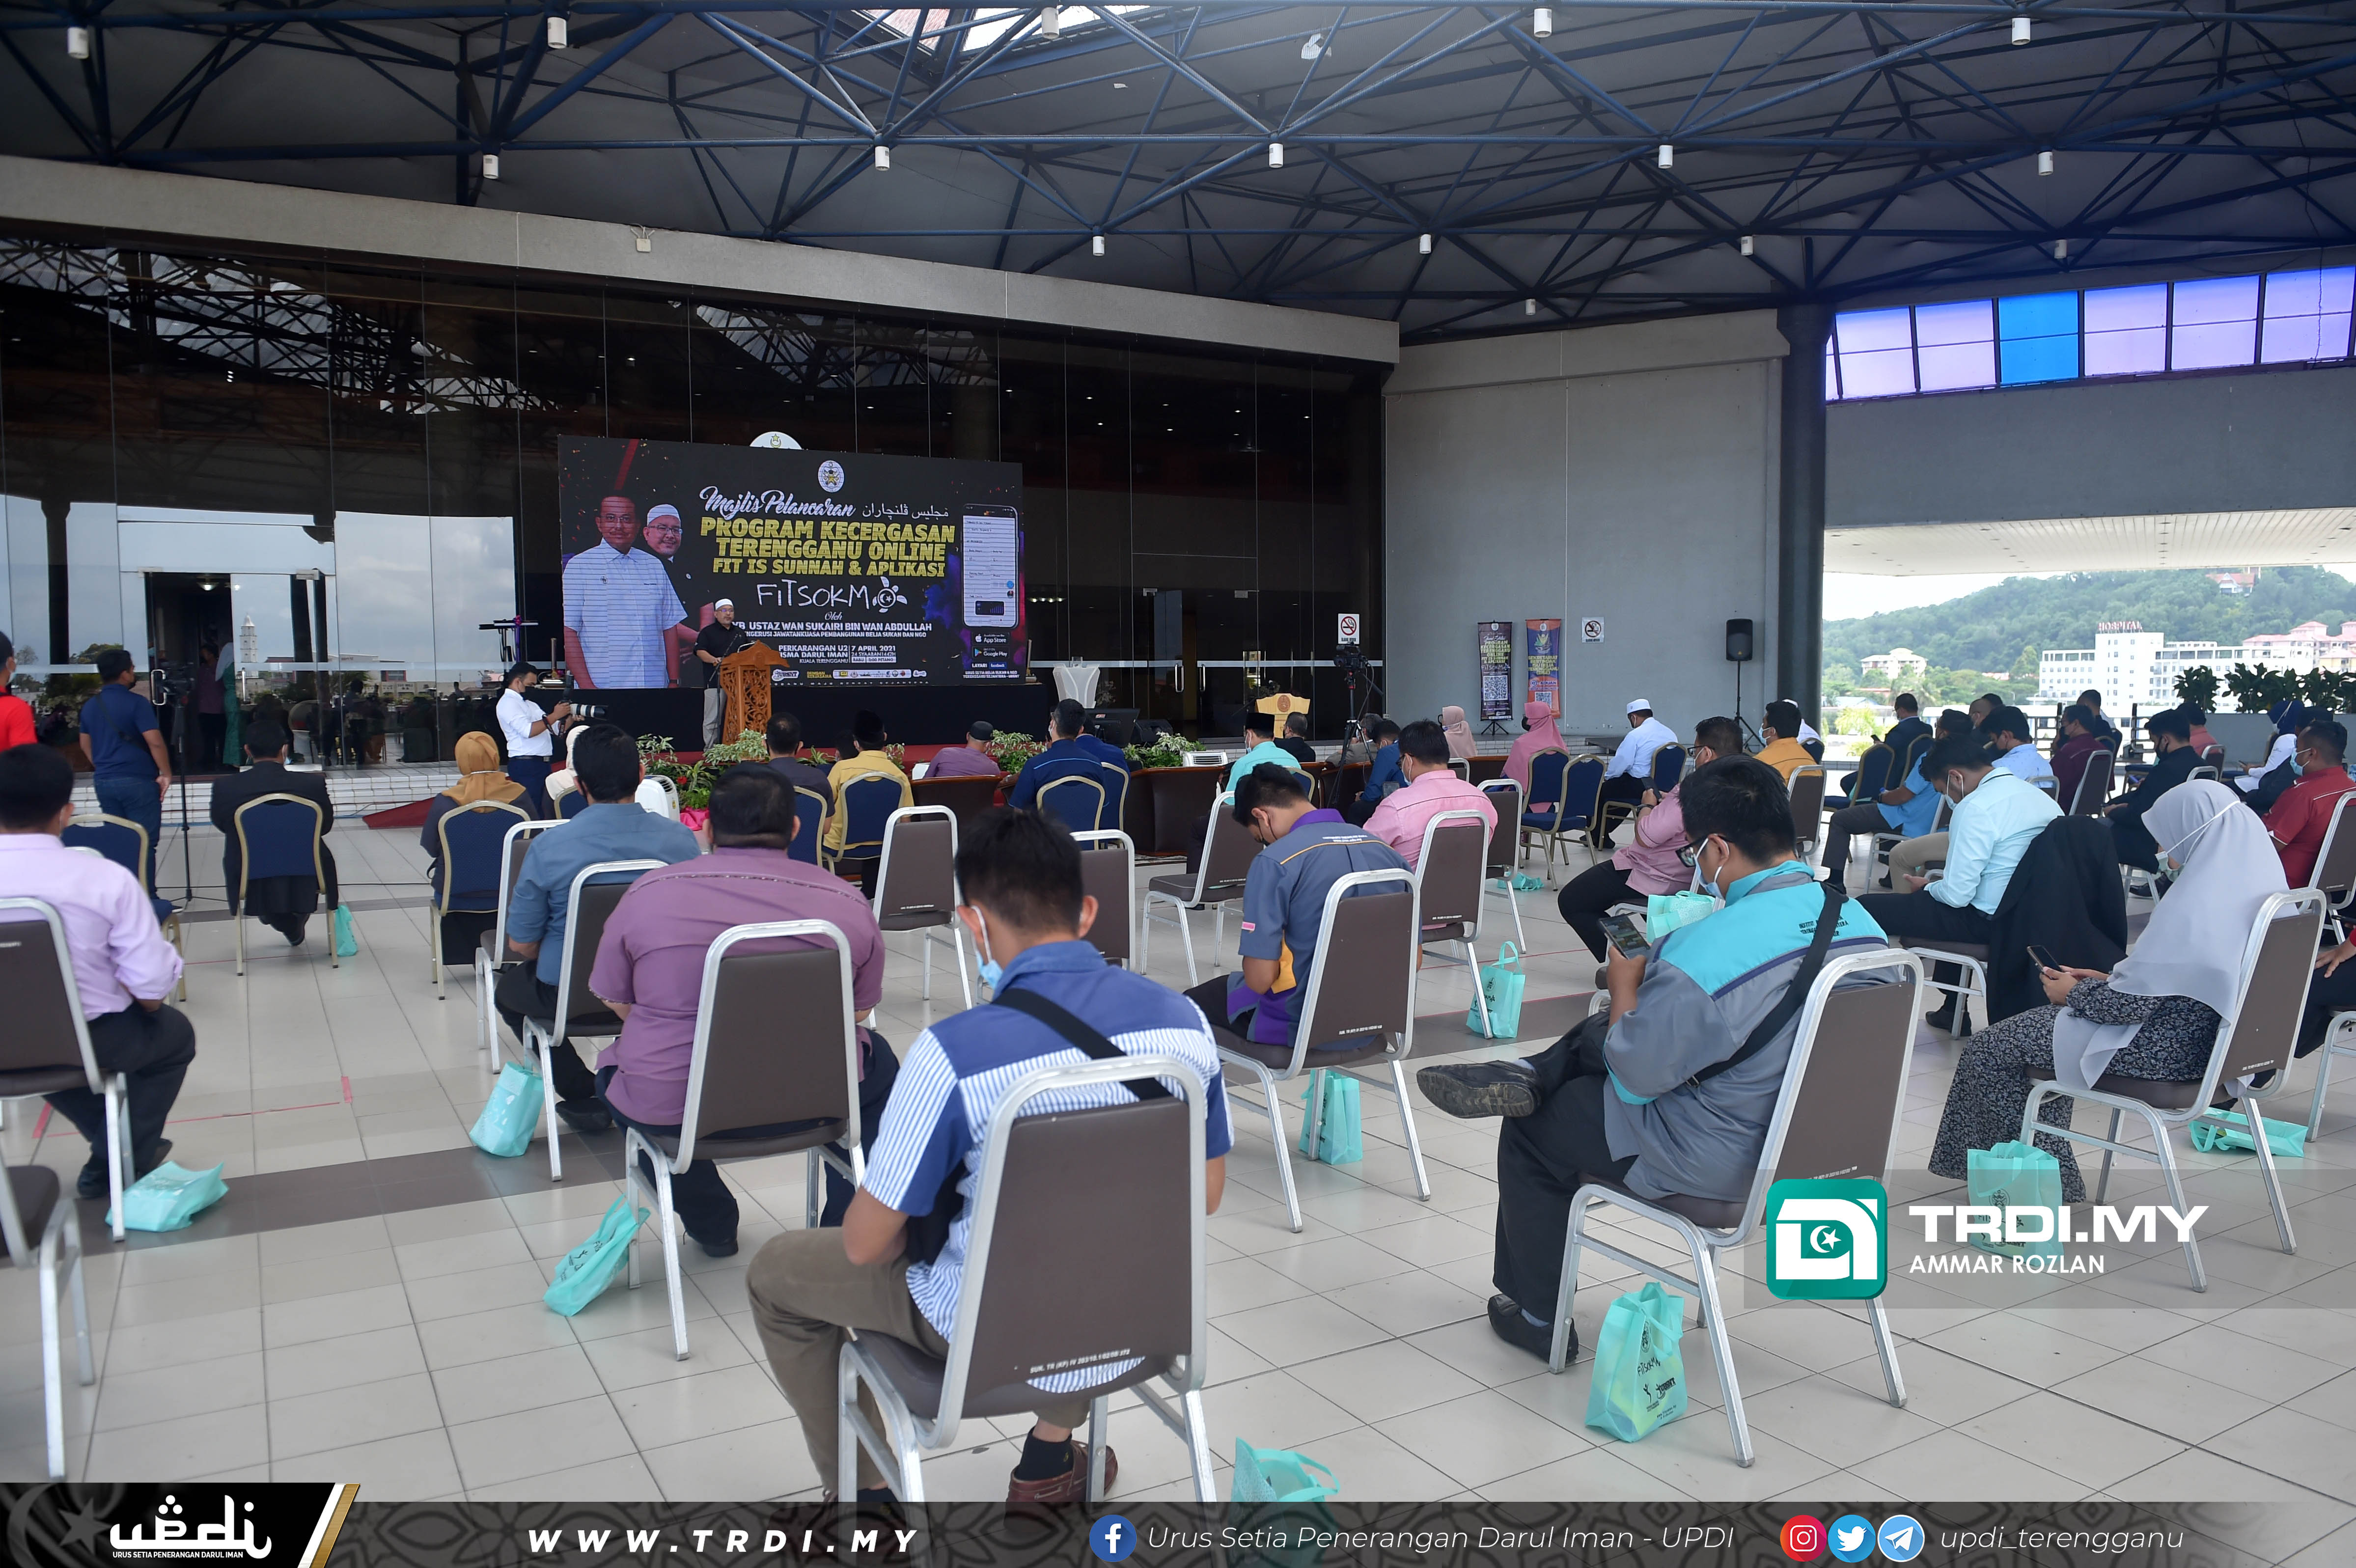 YB Ustaz Wan Sukairi menghadiri Majlis Pelancaran Program Kecergasan Terengganu Online Fitssunnah Aplikasi Fitsokmo di Dewan Perkarangan U2, Wisma Darul Iman.